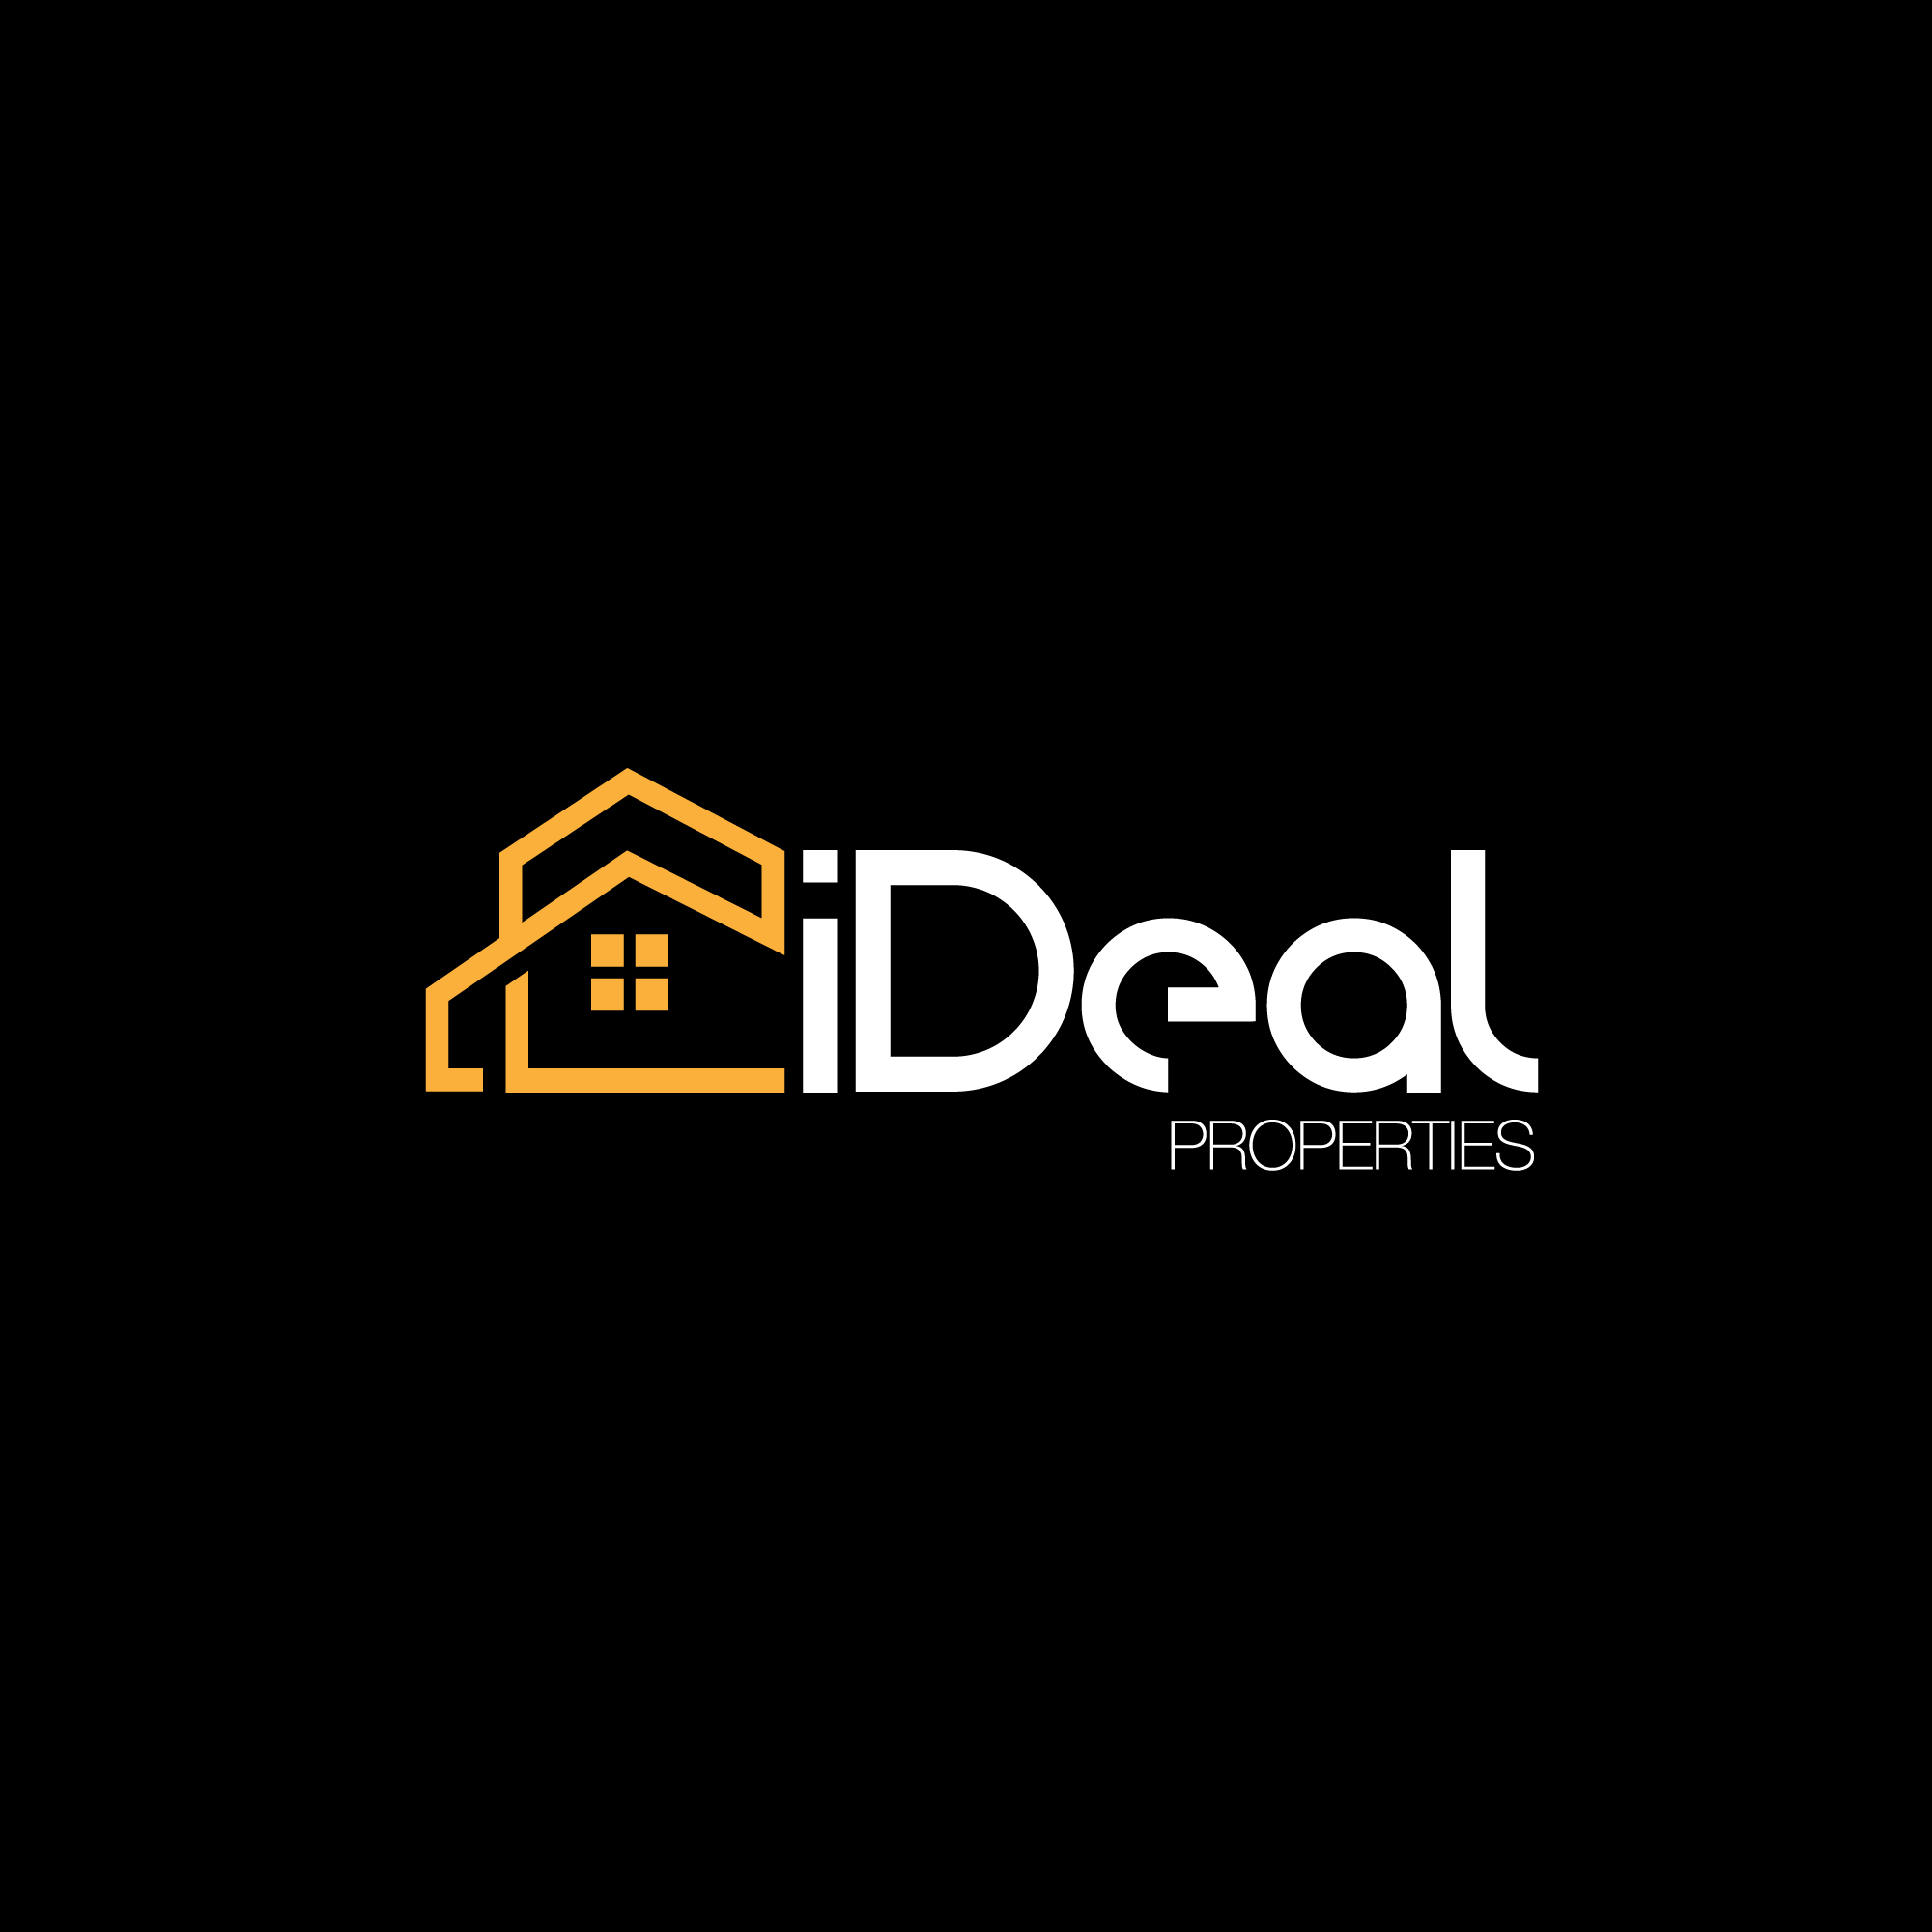 iDeal Properties